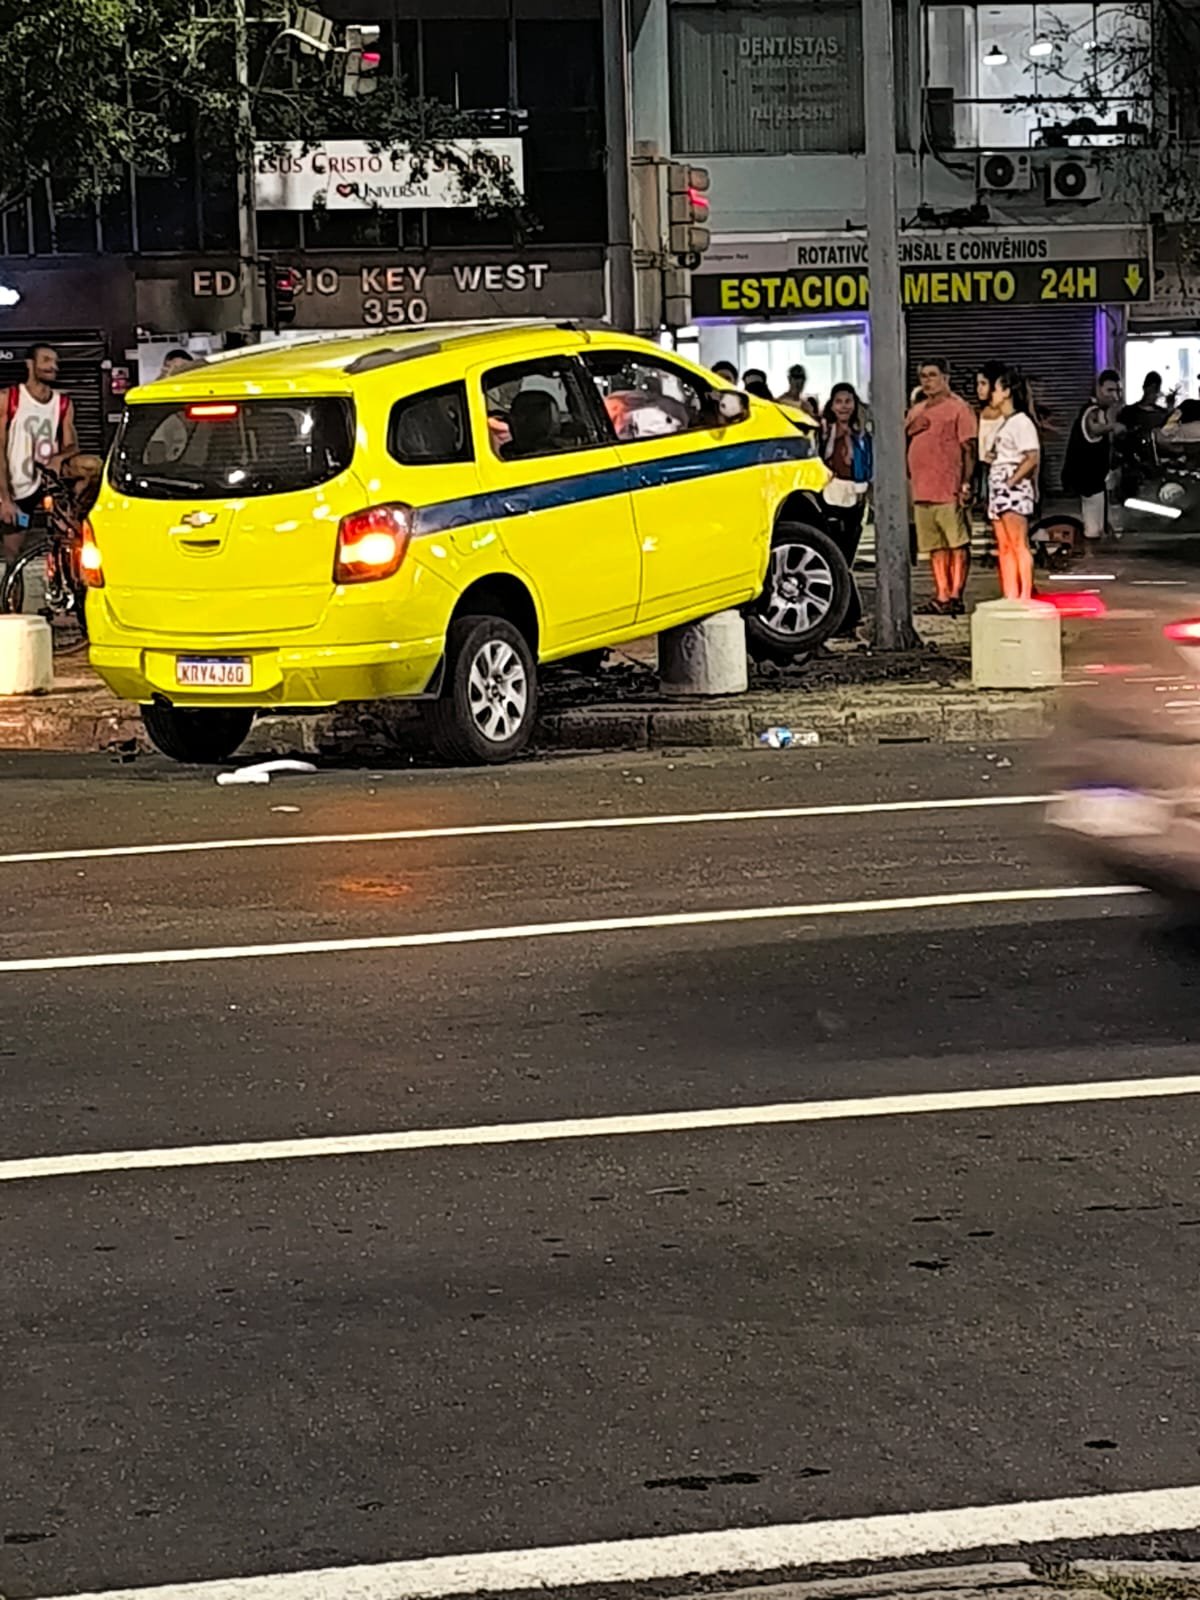 Acidente: Táxi se envolve violenta colisão, em Copacabana - VÍDEO